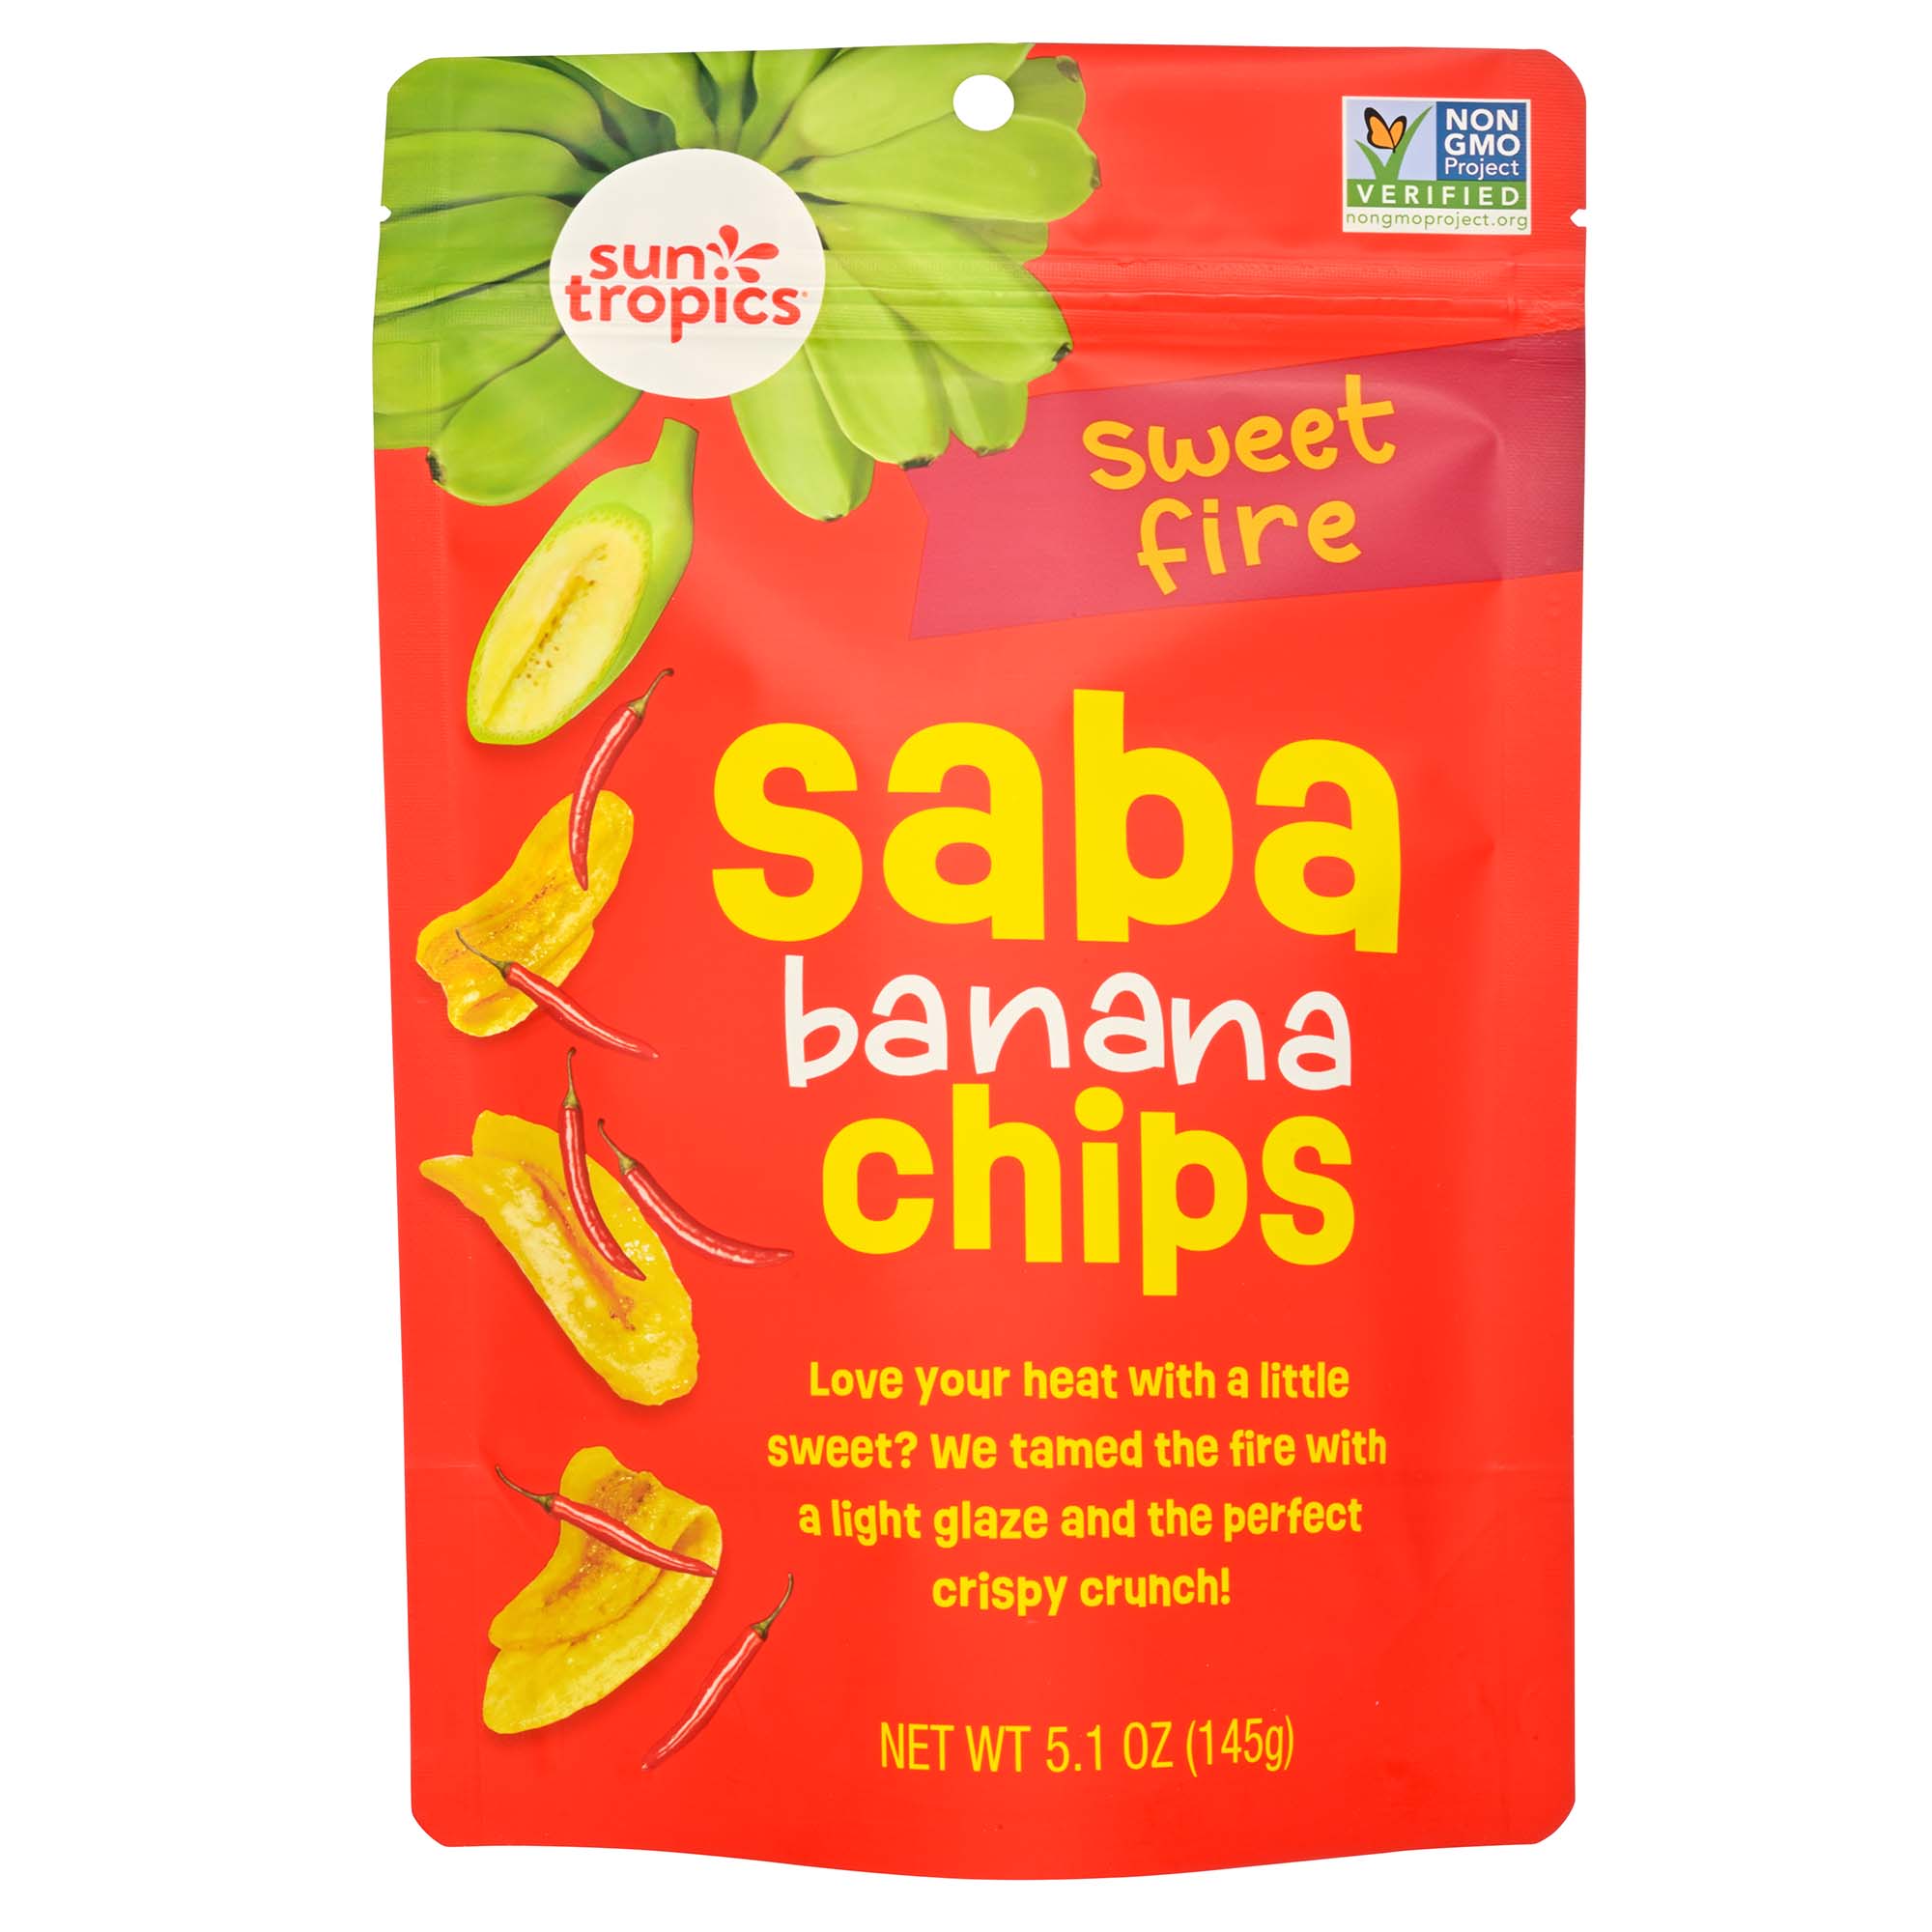 Sun Tropics Saba Banana Chips - Sweet Fire